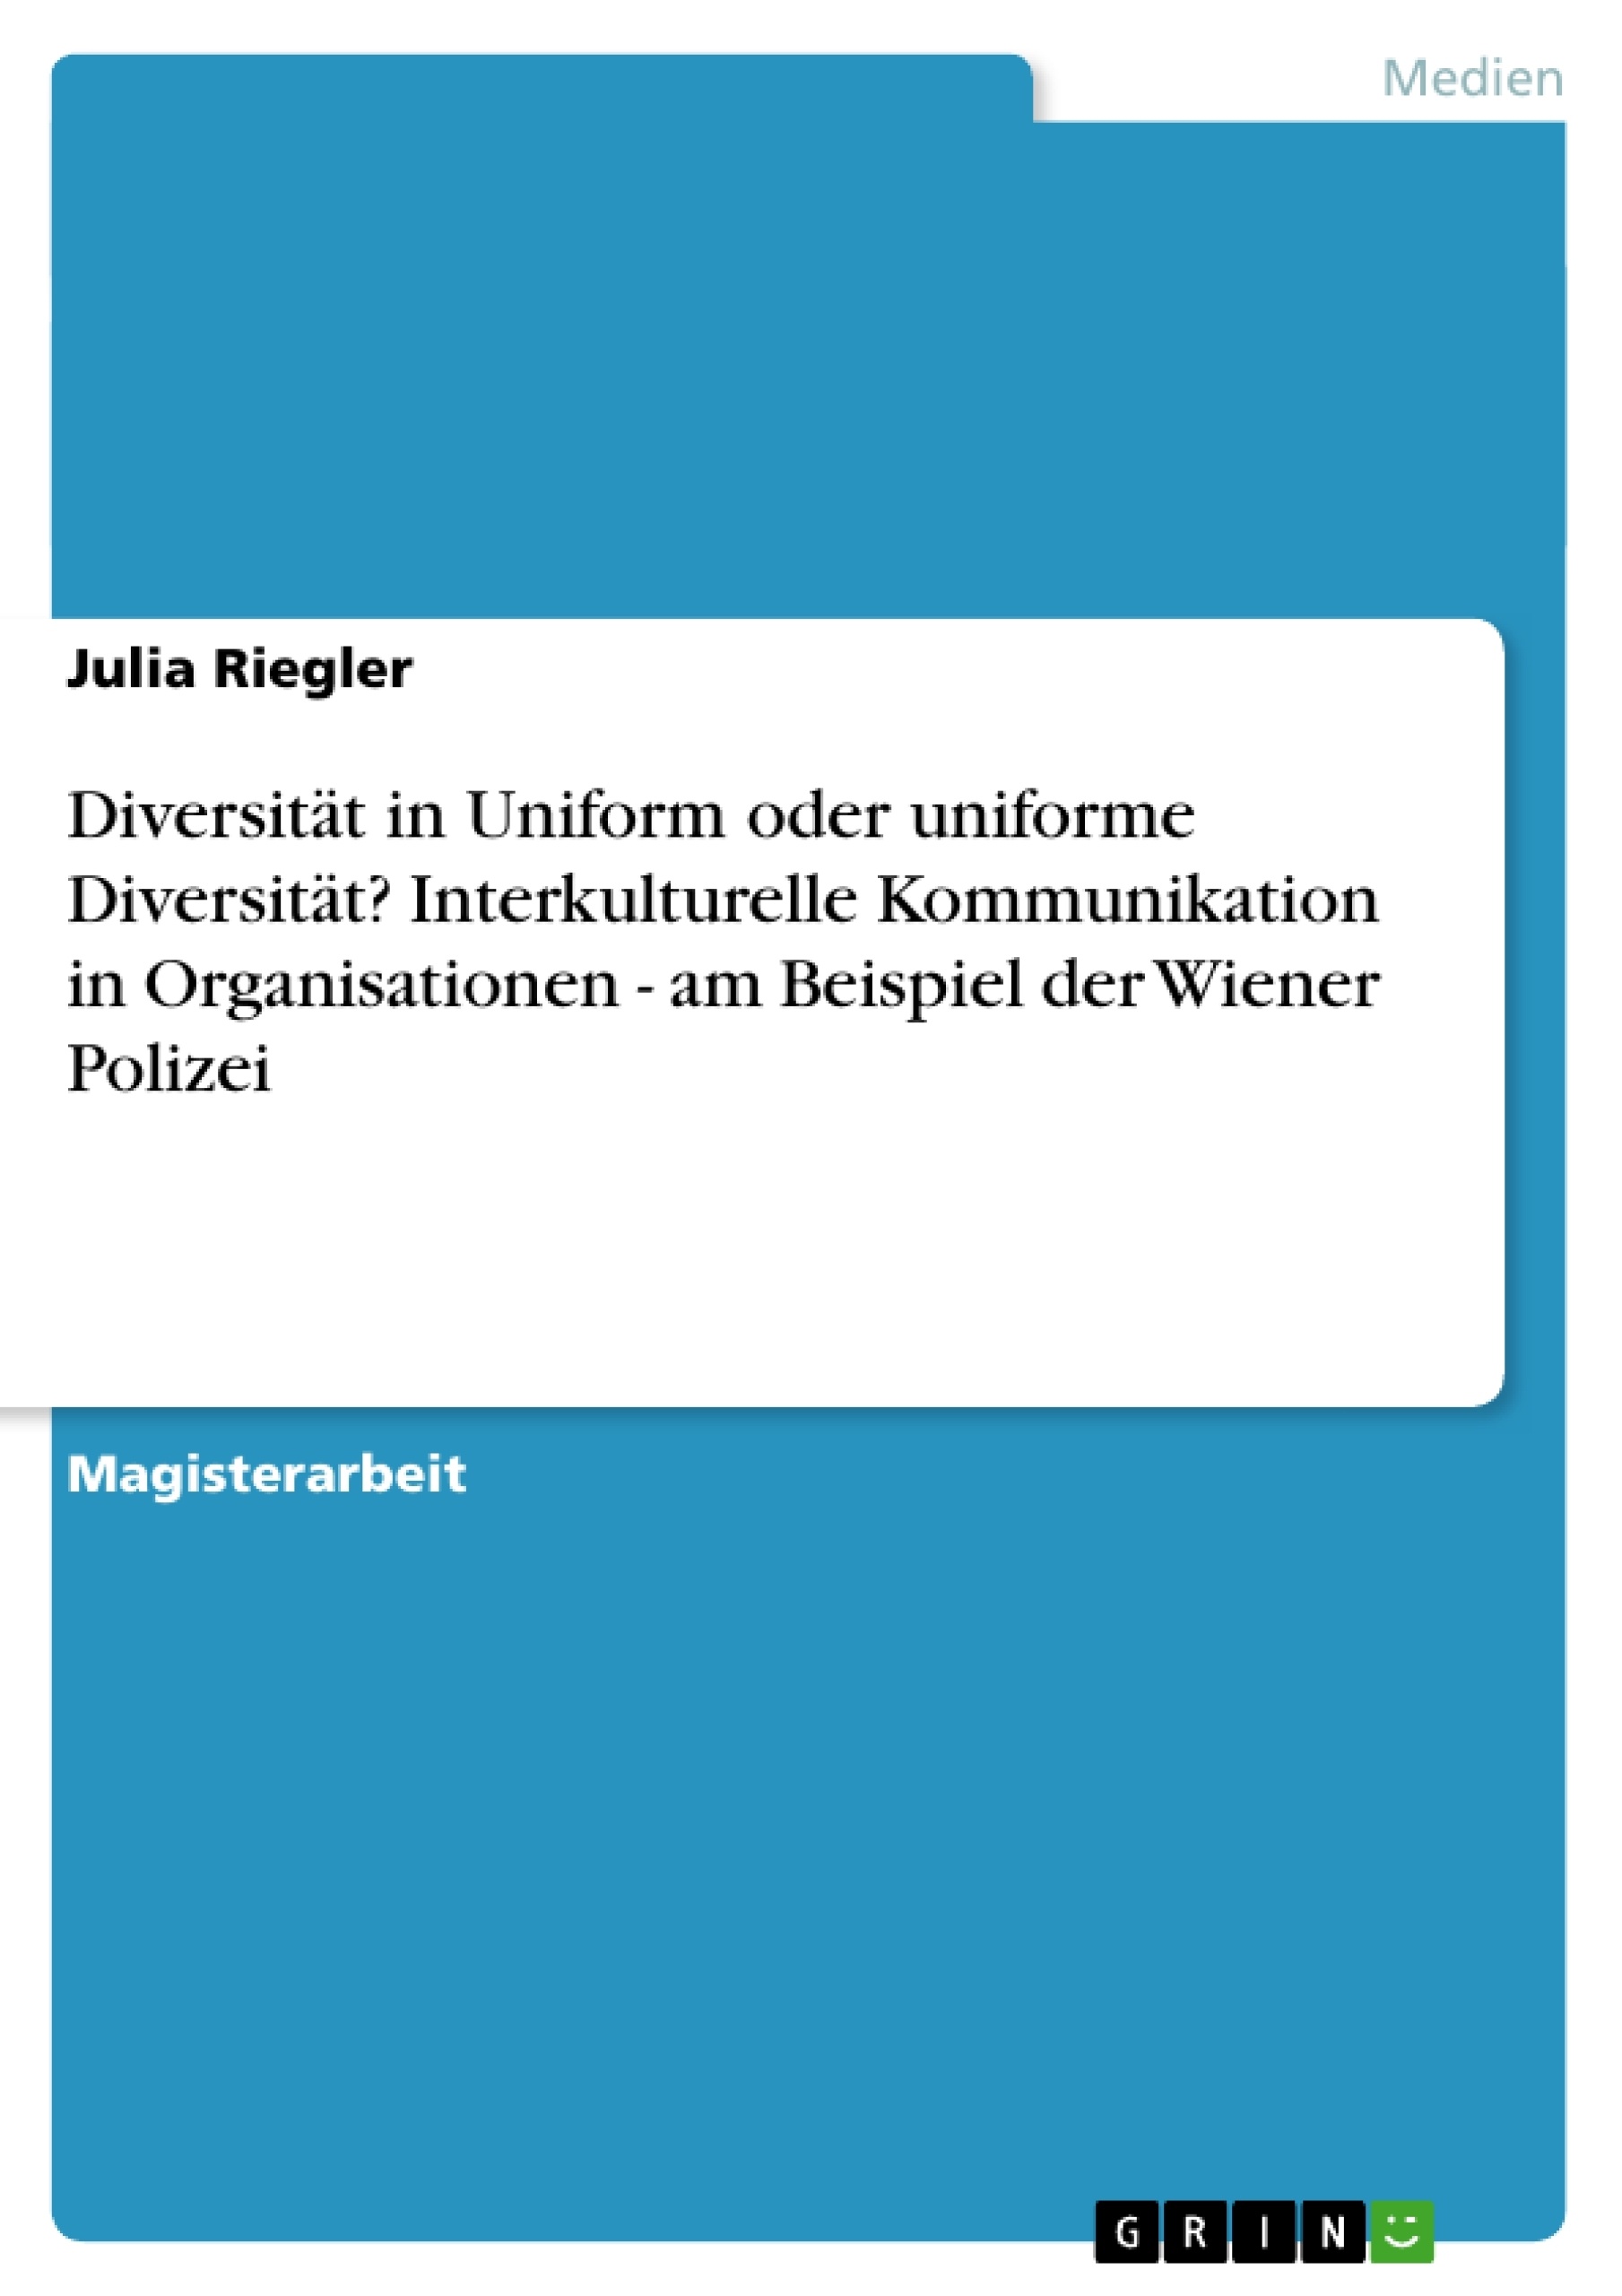 Título: Diversität in Uniform oder uniforme Diversität? Interkulturelle Kommunikation in Organisationen - am Beispiel der Wiener Polizei